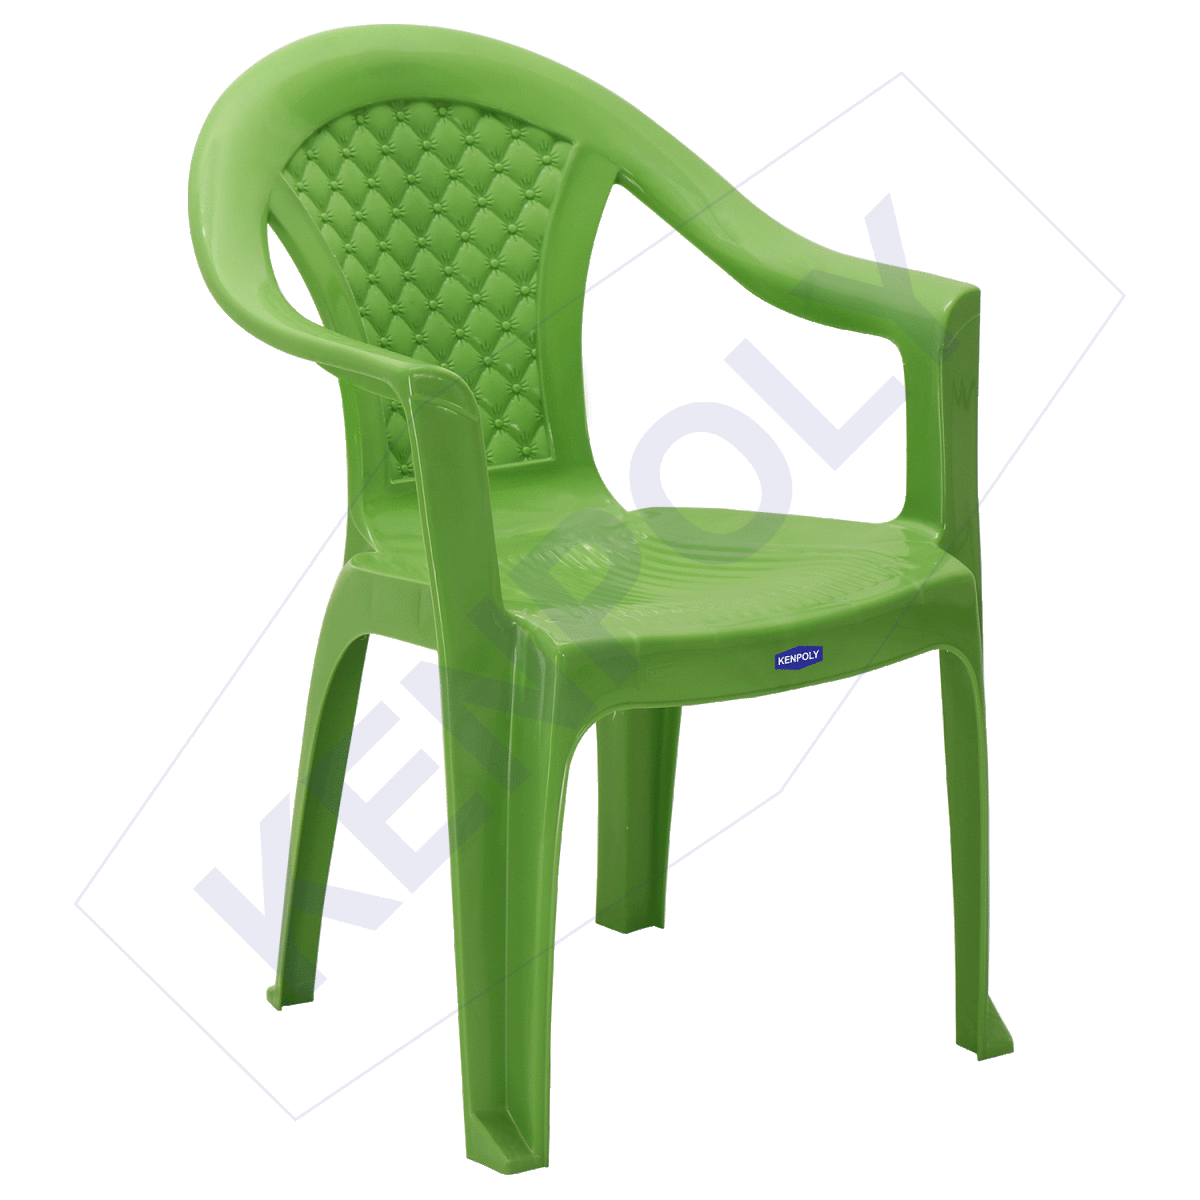 Chair 2035